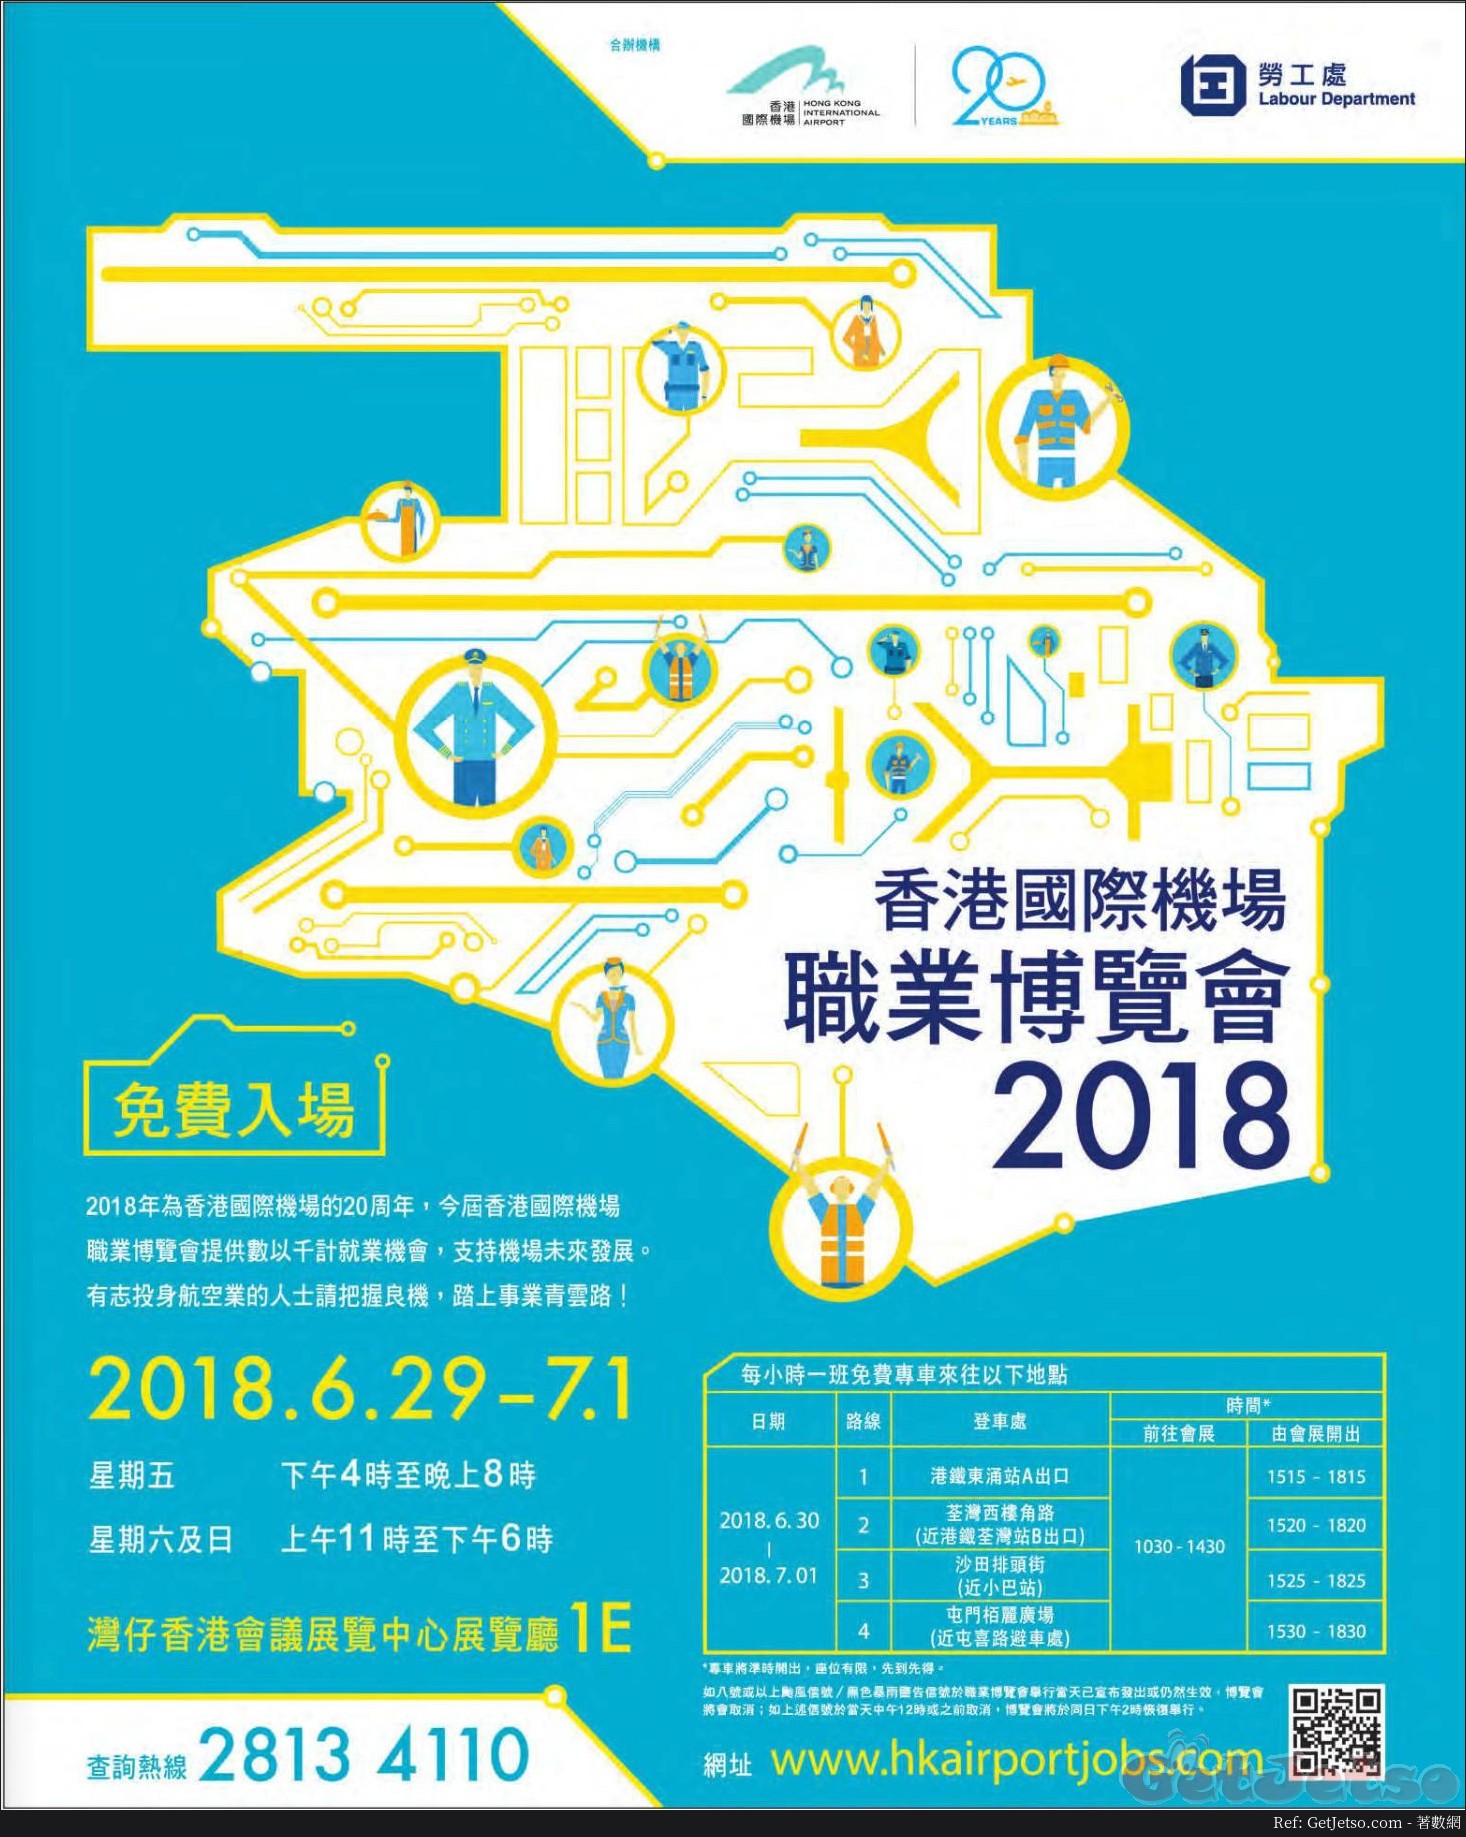 香港國際機場職業博覽會2018免費入場(18年6月29-7月1日)圖片1